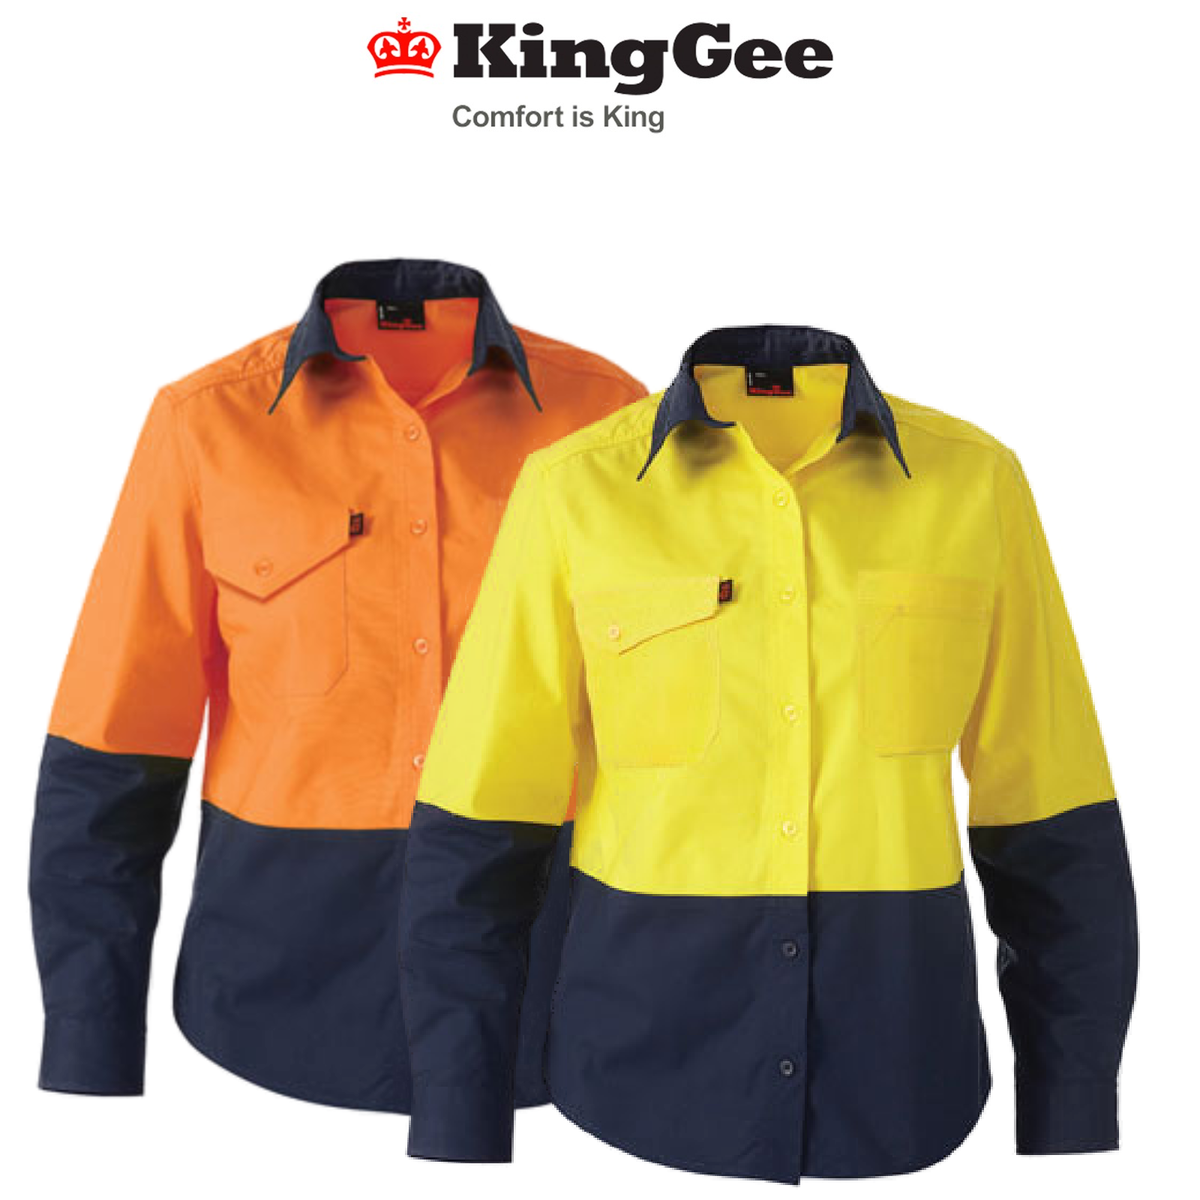 KingGee WorkCool 2 Womens Hi Vis Spliced Shirt L/S Lightweight Cotton K44543